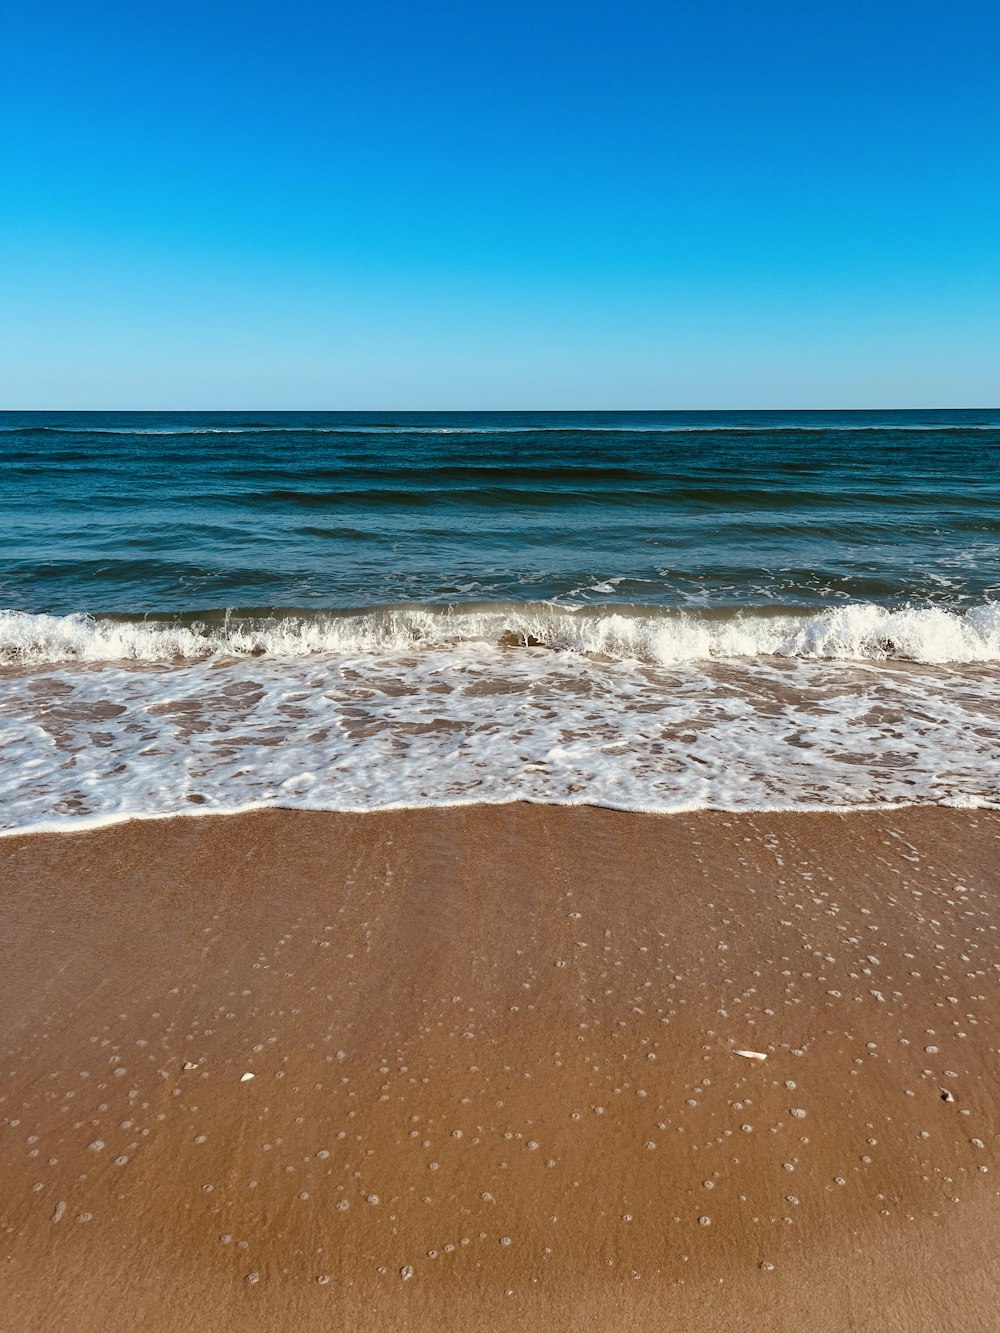 a sandy beach with waves